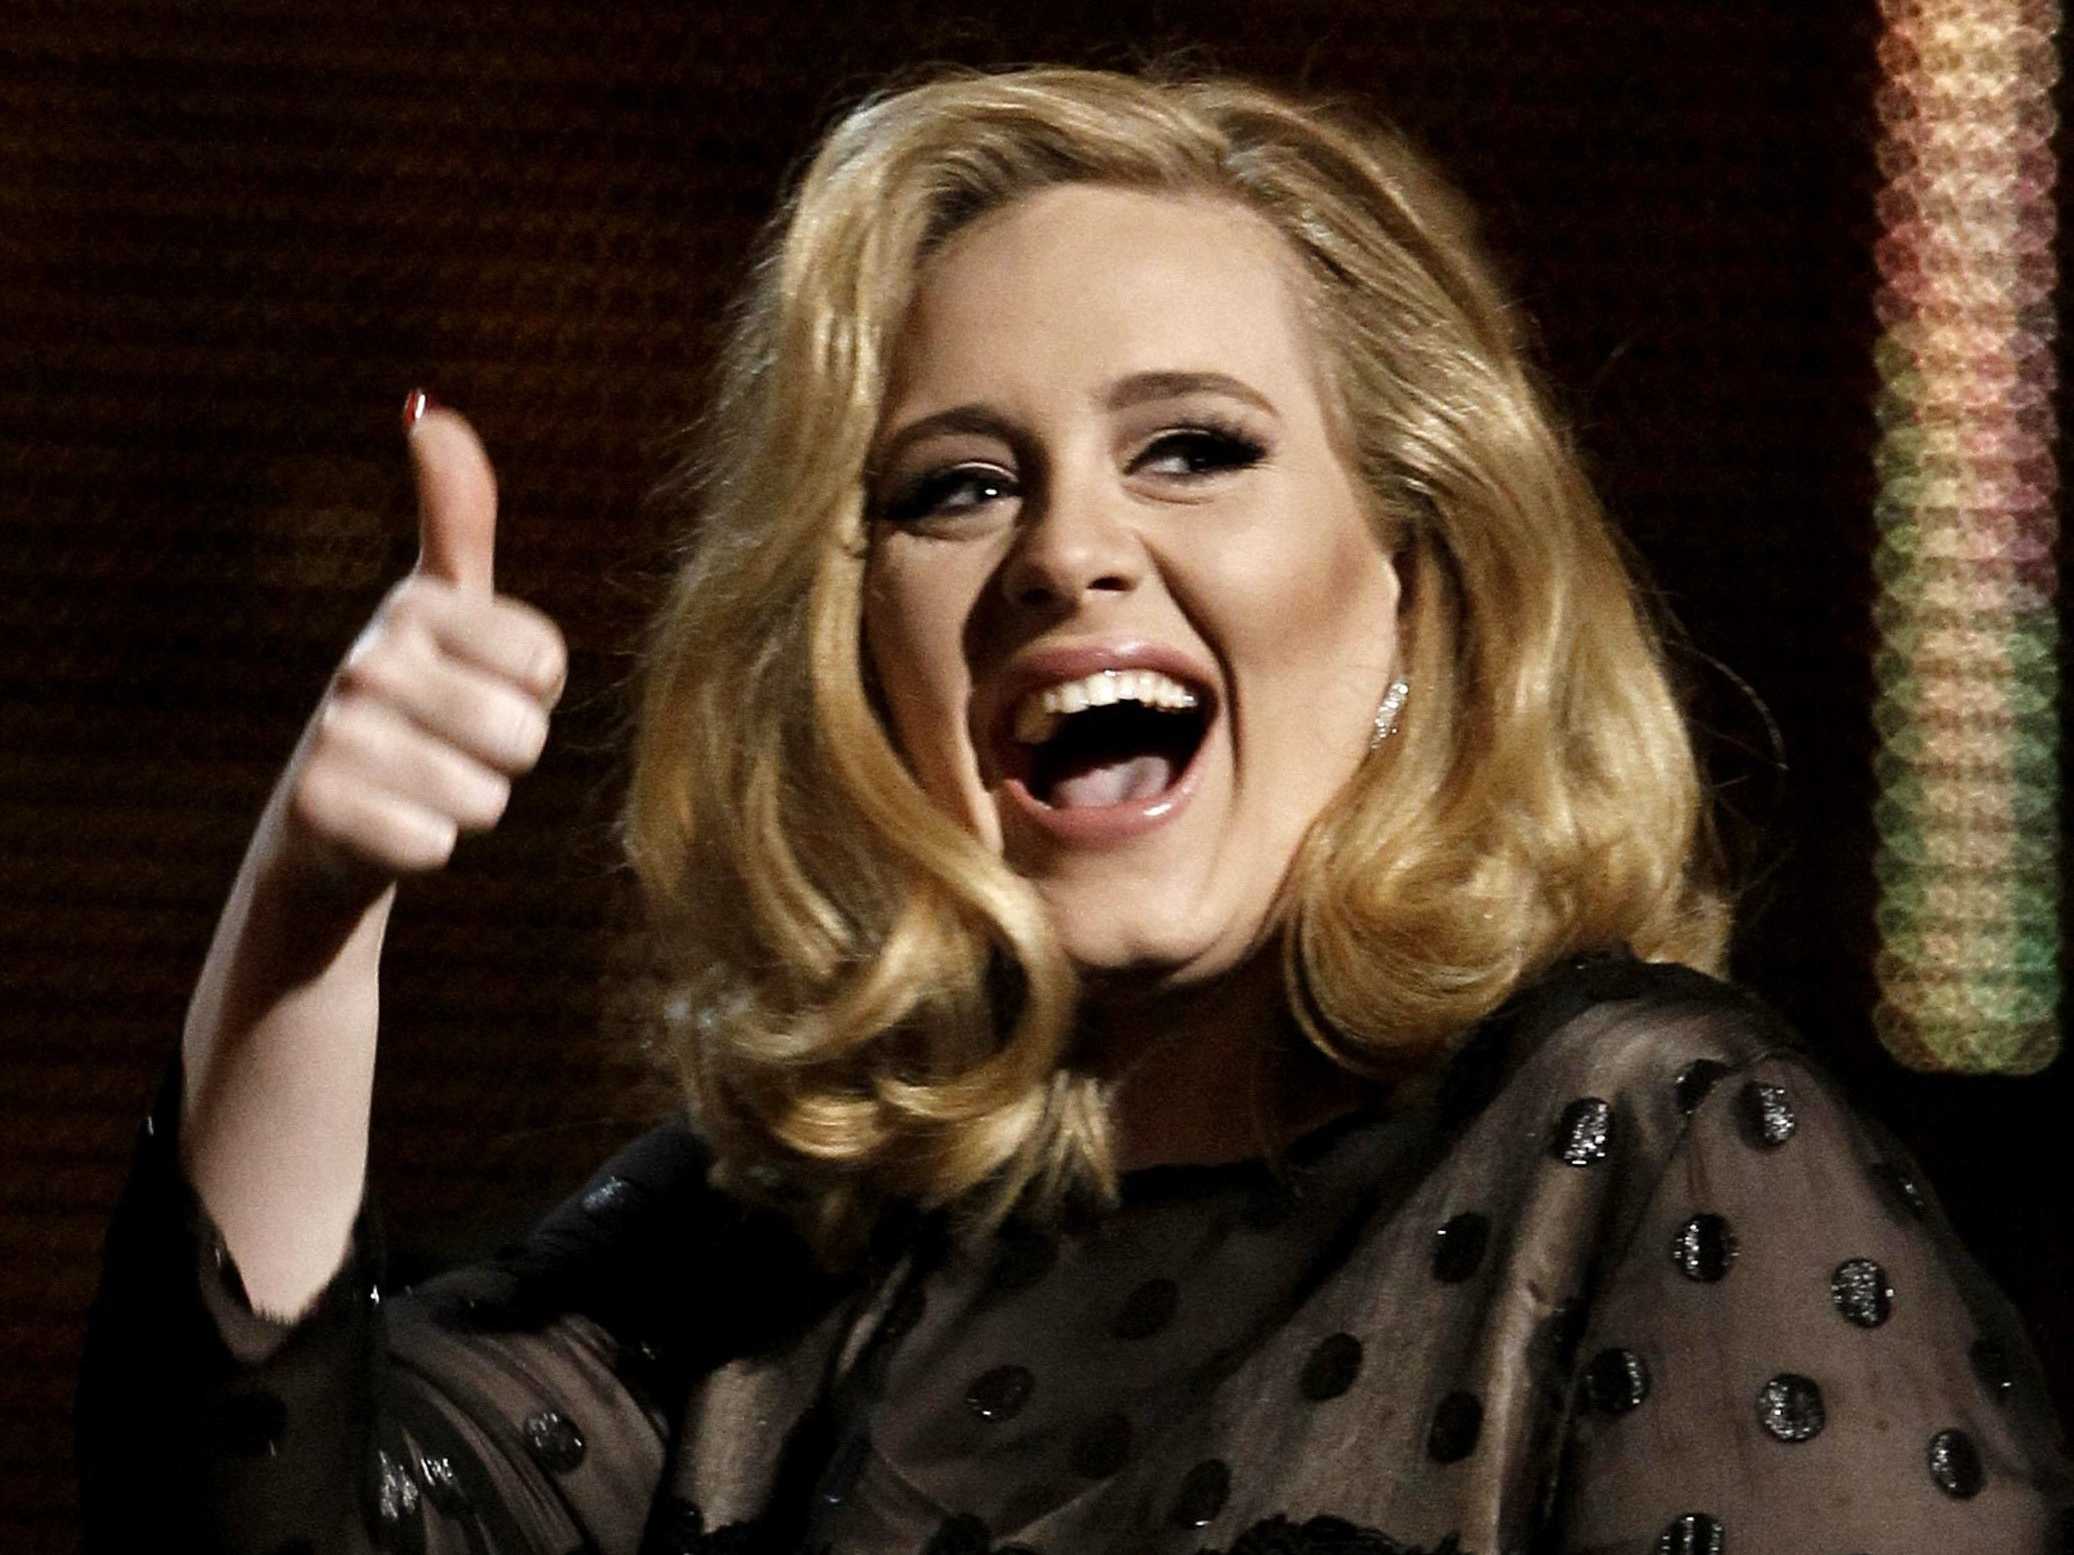 Perché Adele ha annullato i suoi concerti?